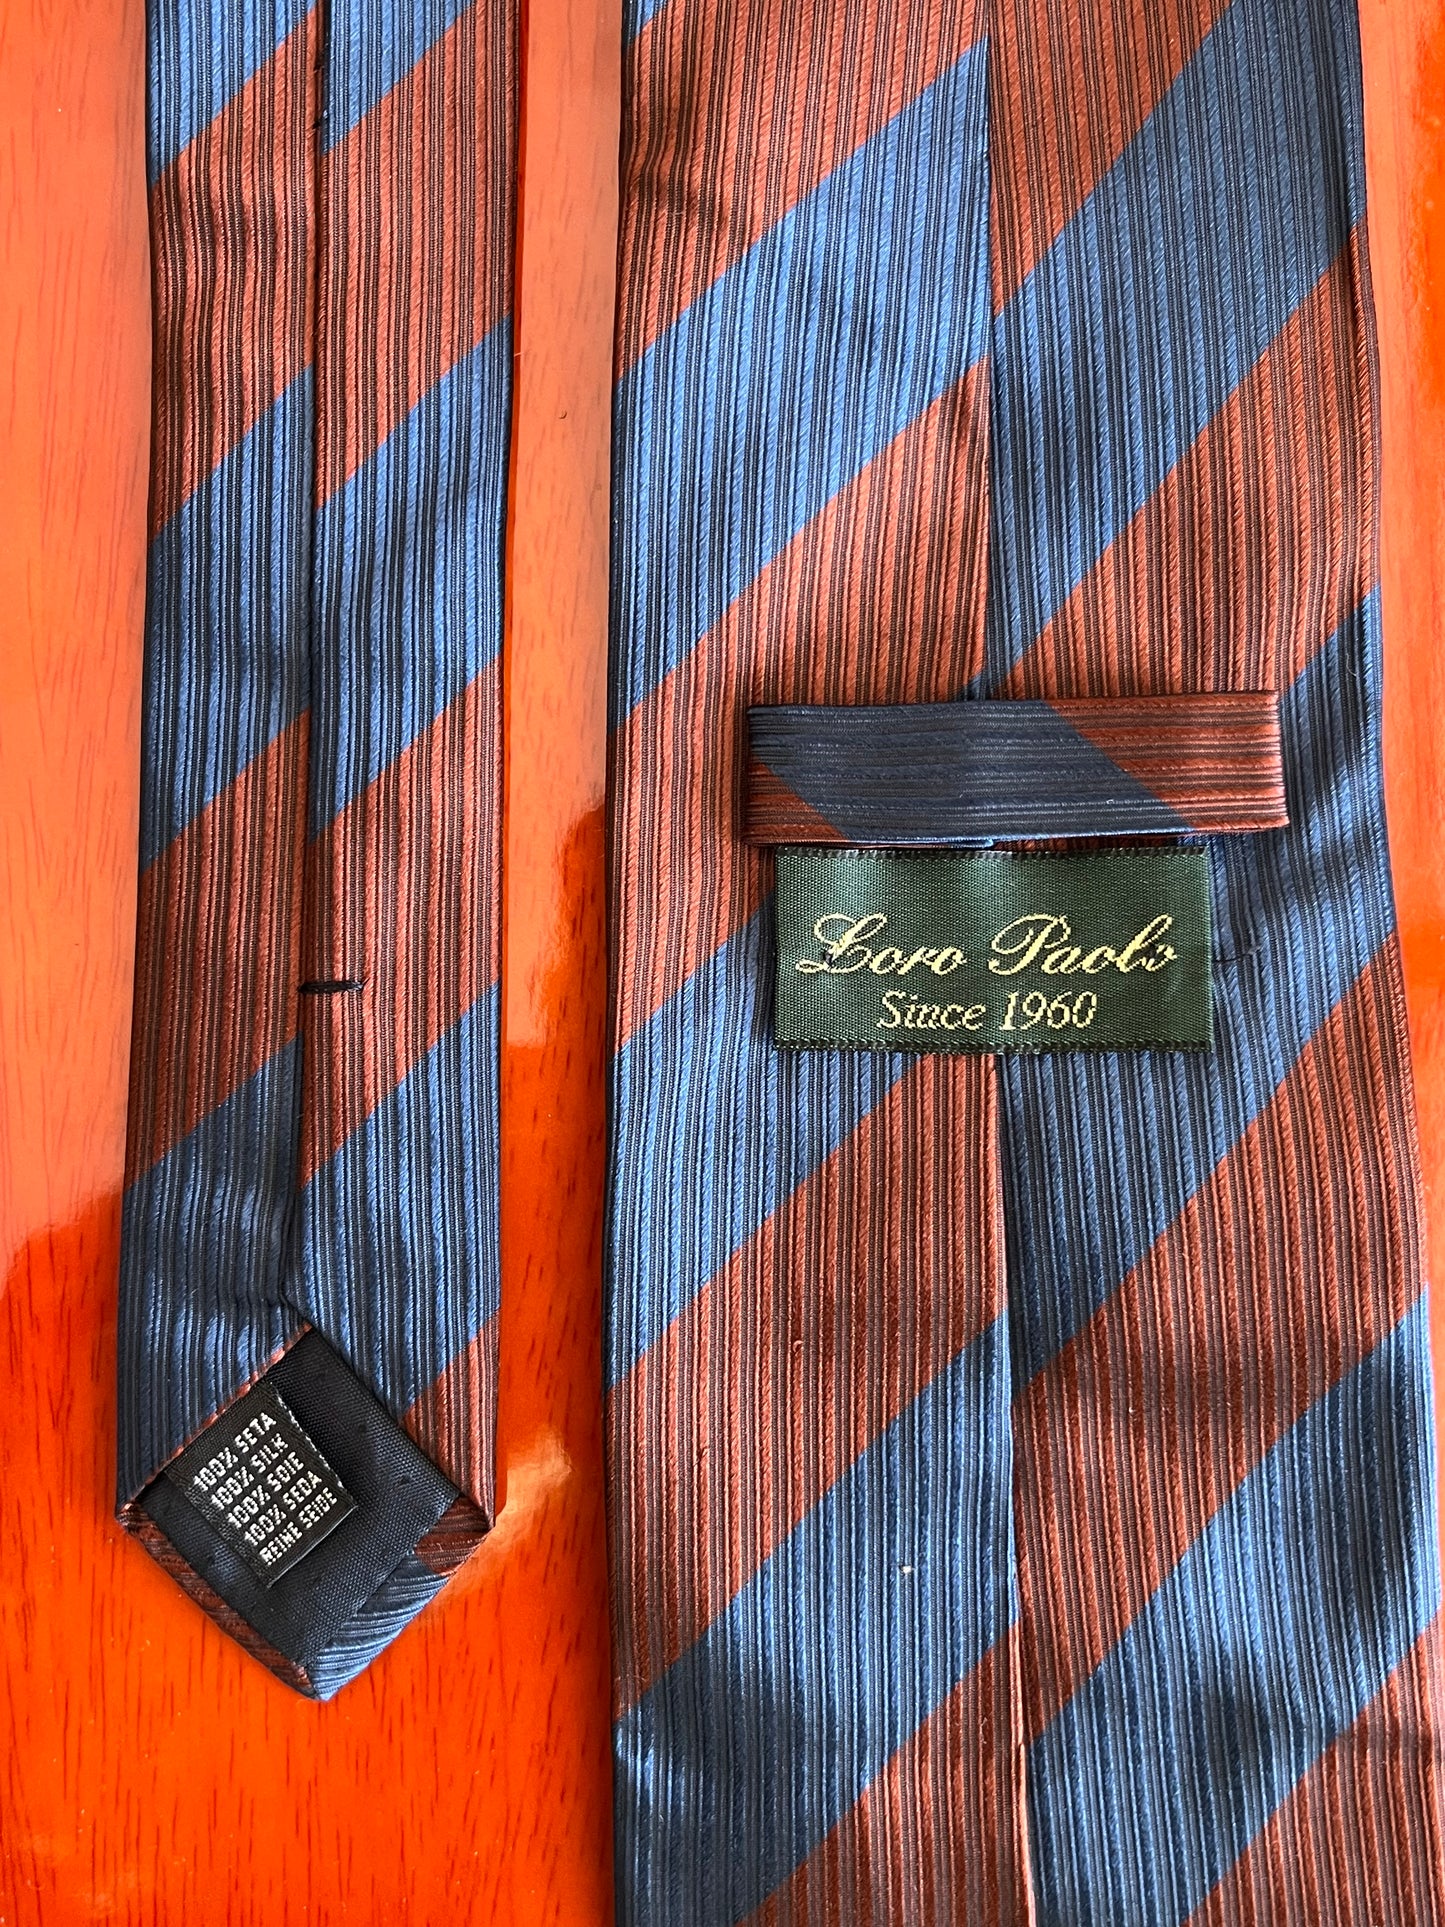 Cravatta anni ‘90 blu e marrone